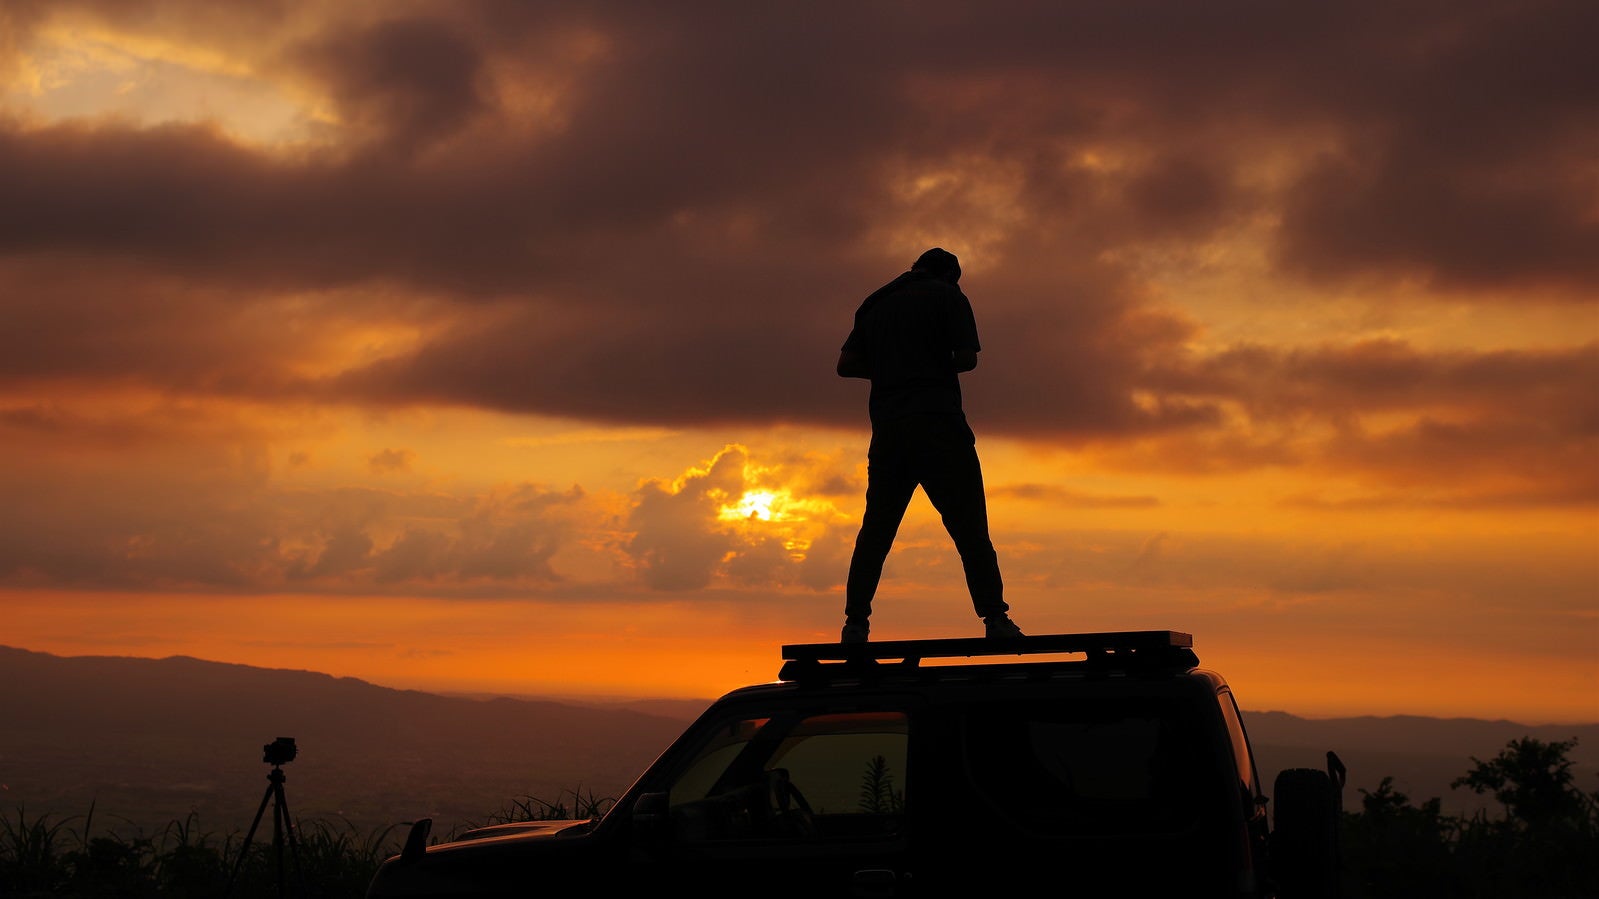 「車上から散居村の夕日を狙うカメラマン」の写真